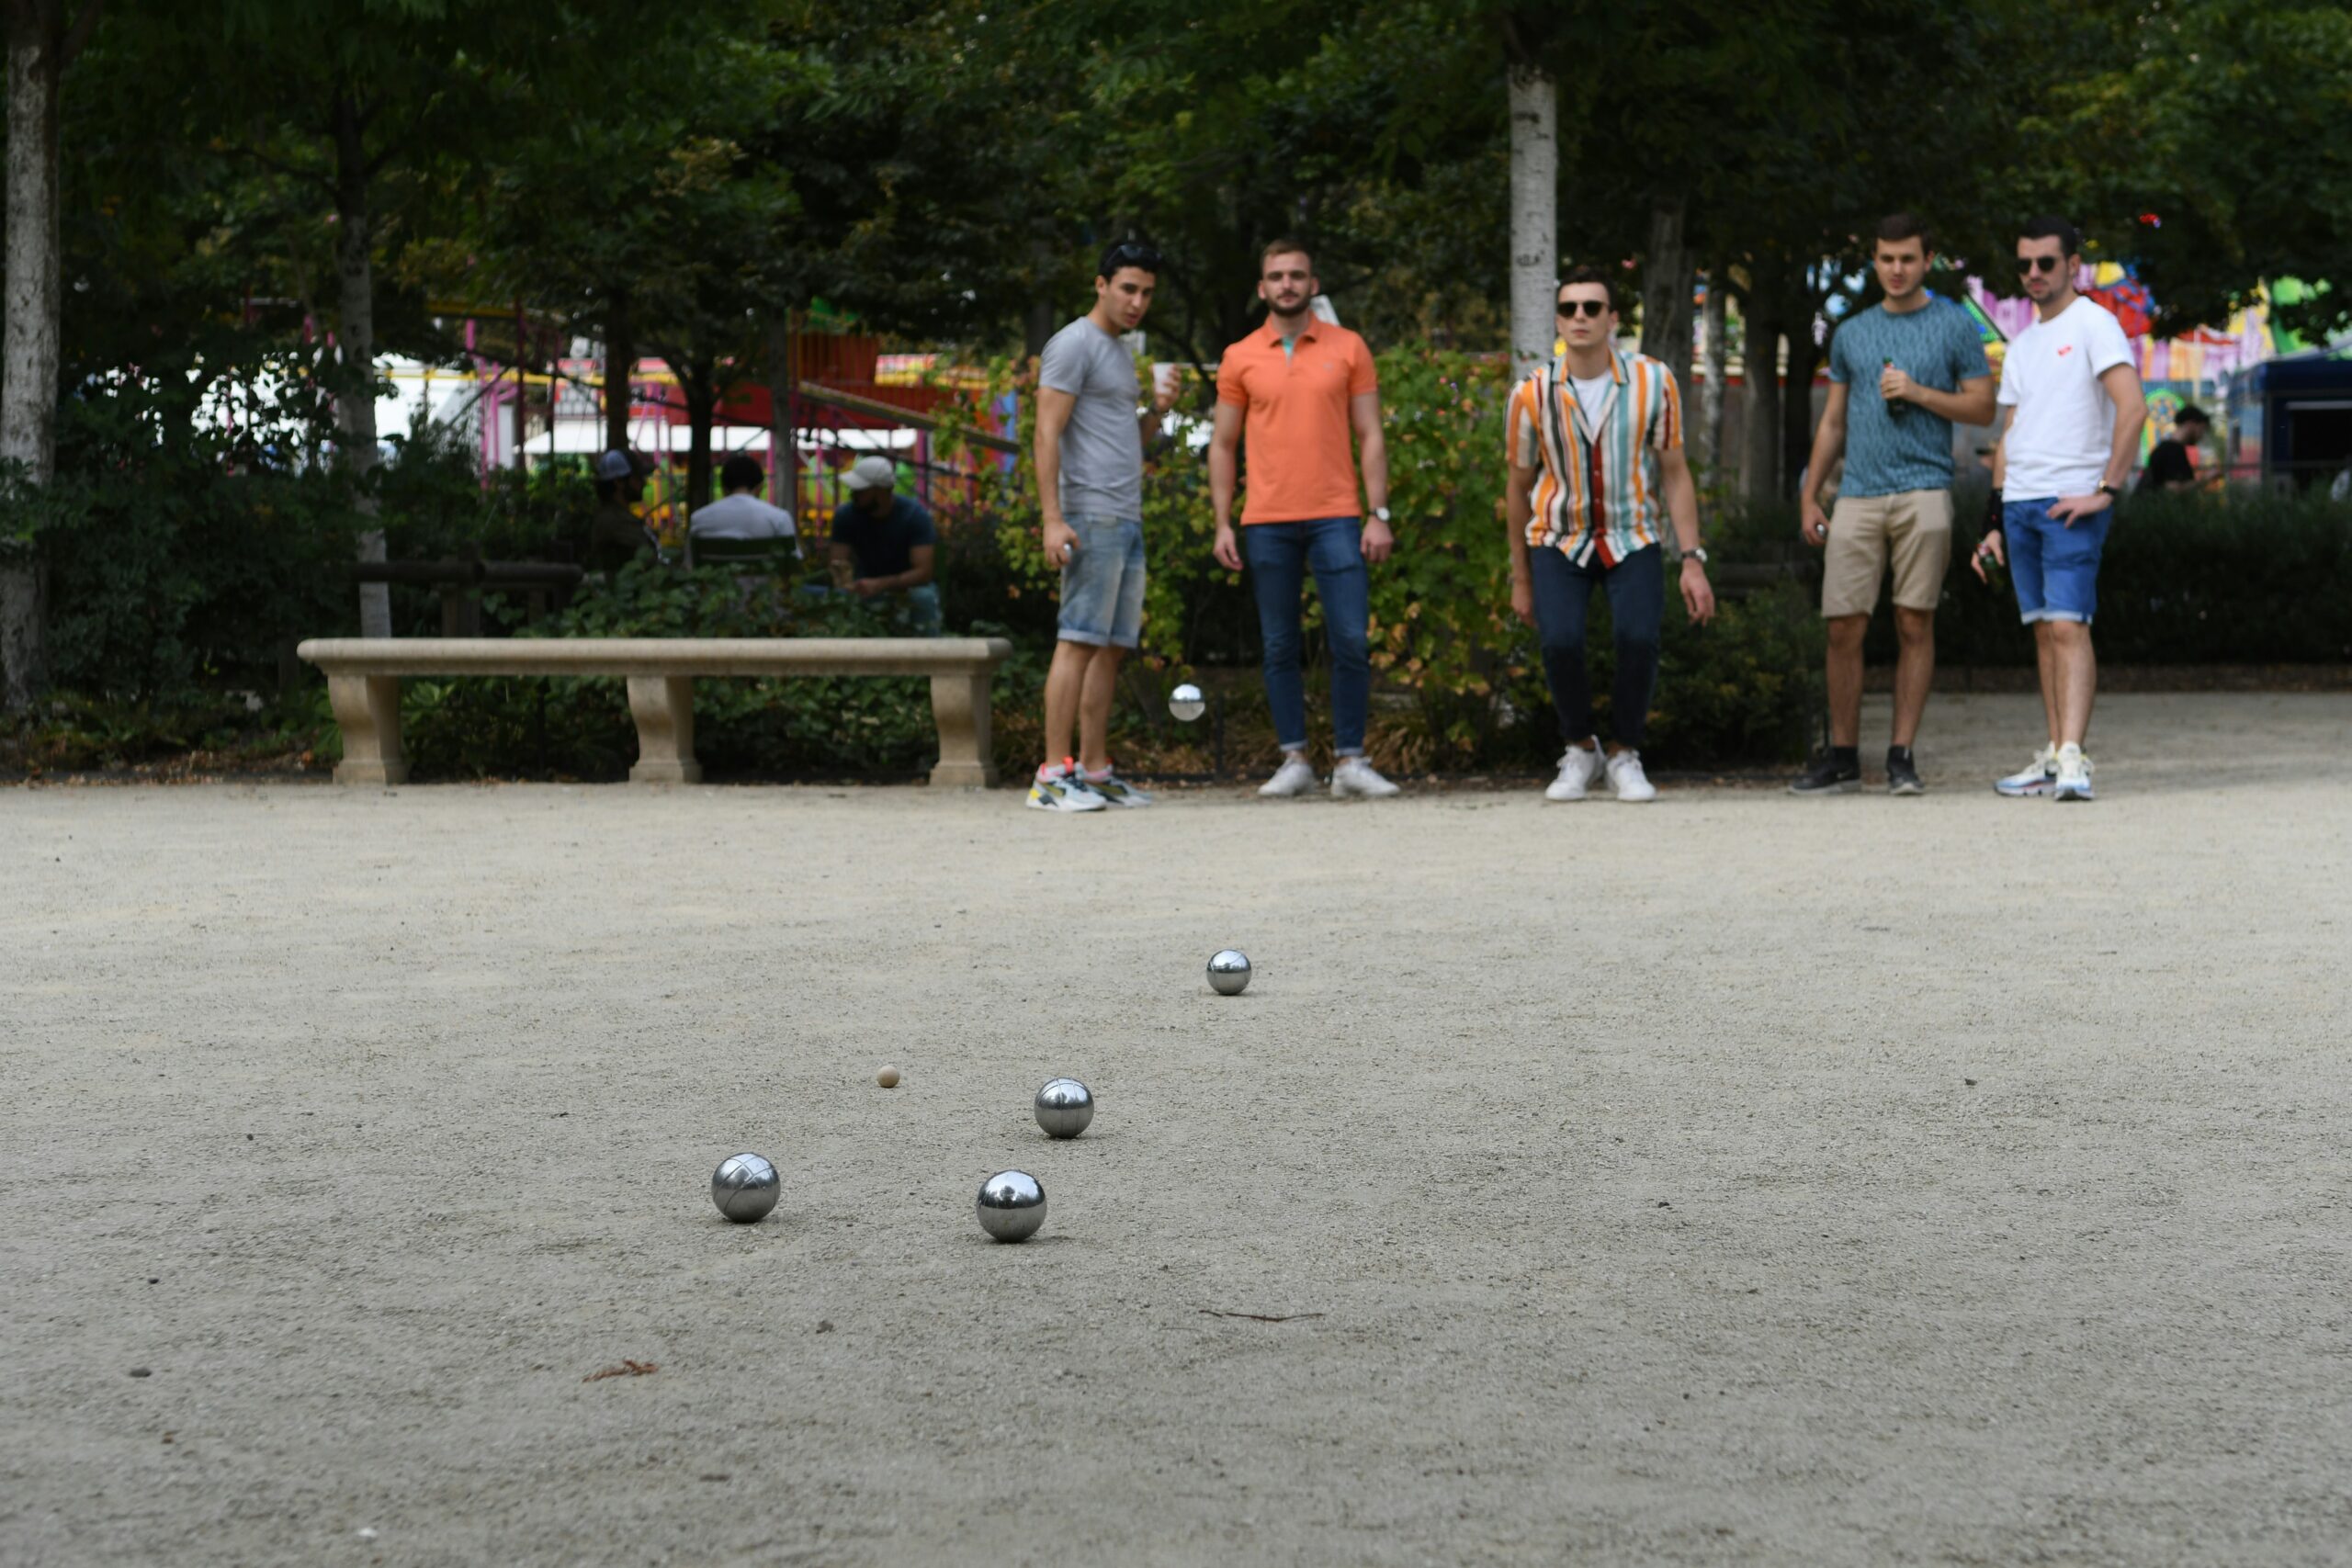 découvrez tout sur la pétanque, un sport de boules populaire originaire de france, pratiqué en plein air et apprécié par les joueurs de tous âges.